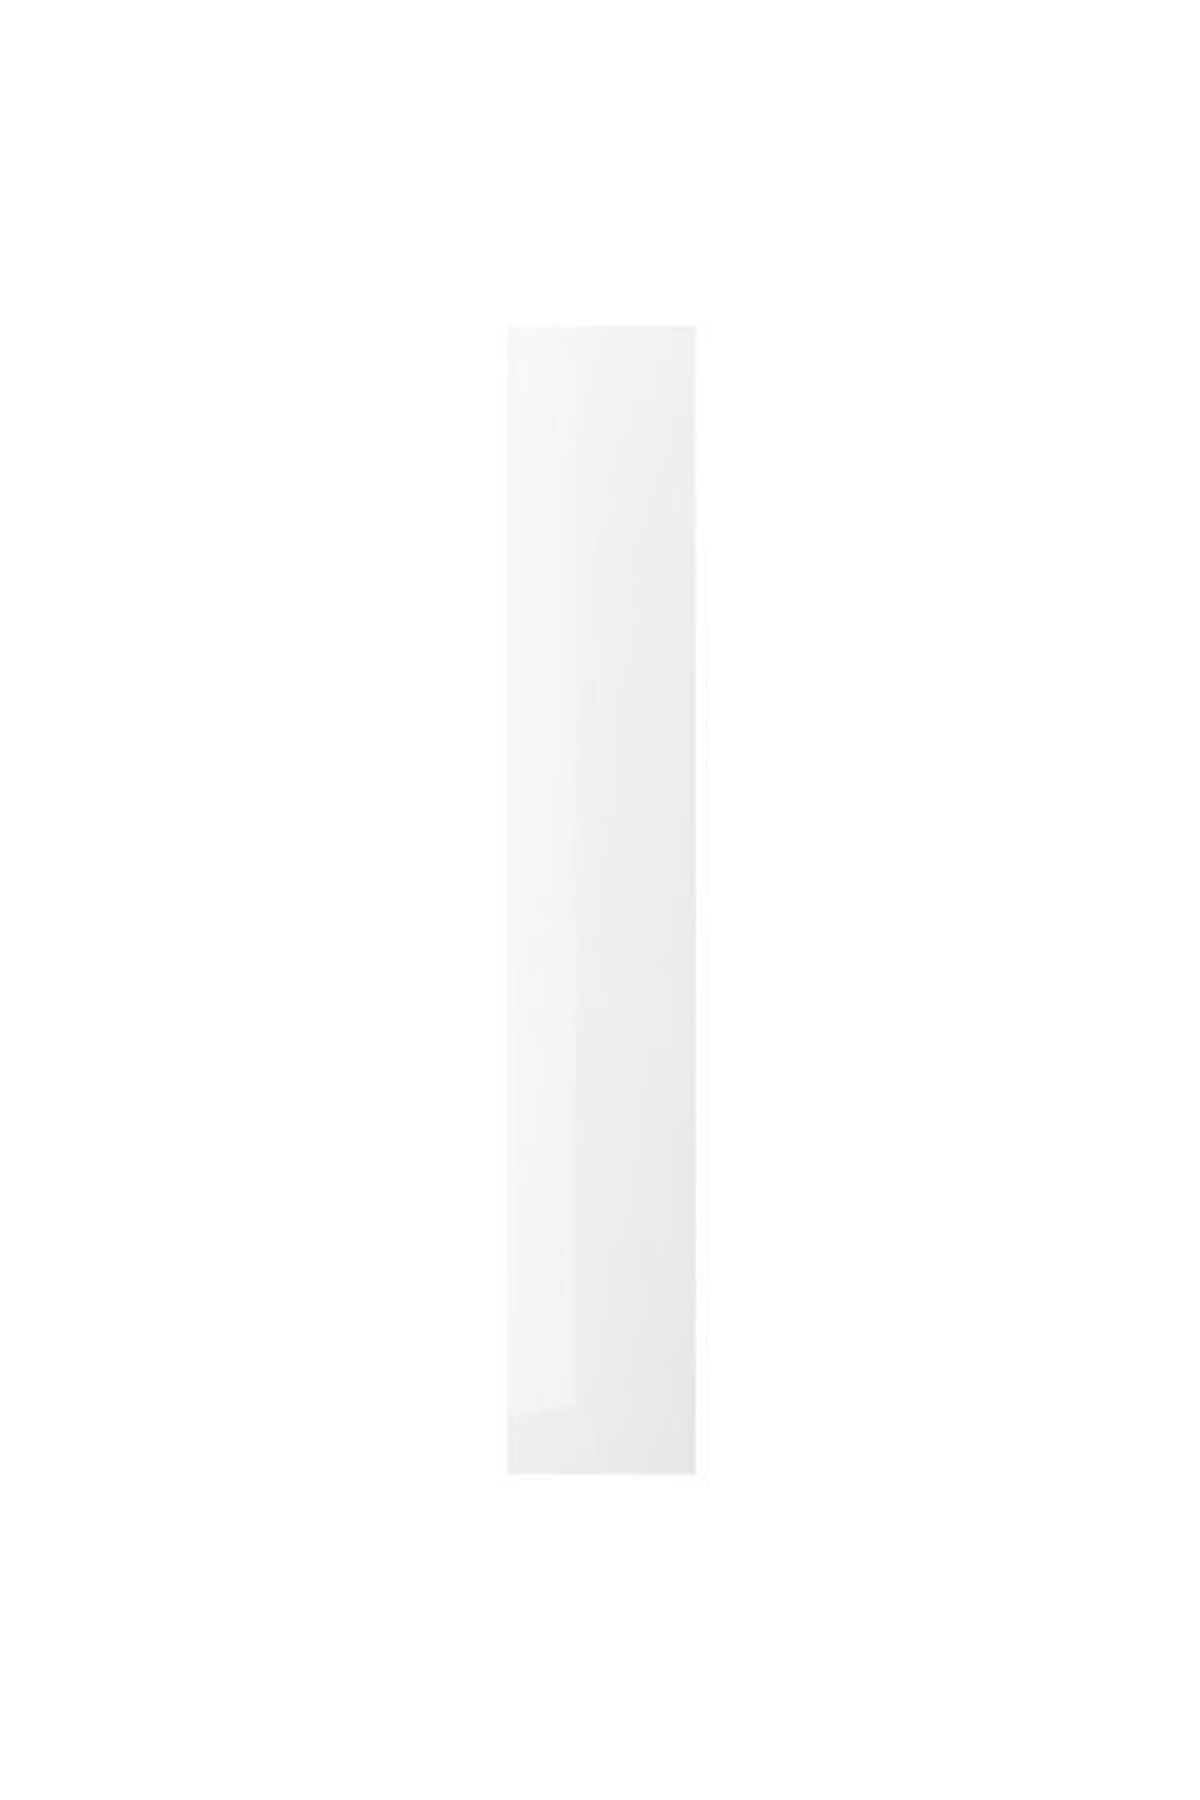 IKEA Enhet, Kapak, 30x180 cm Parlak Cila Beyaz